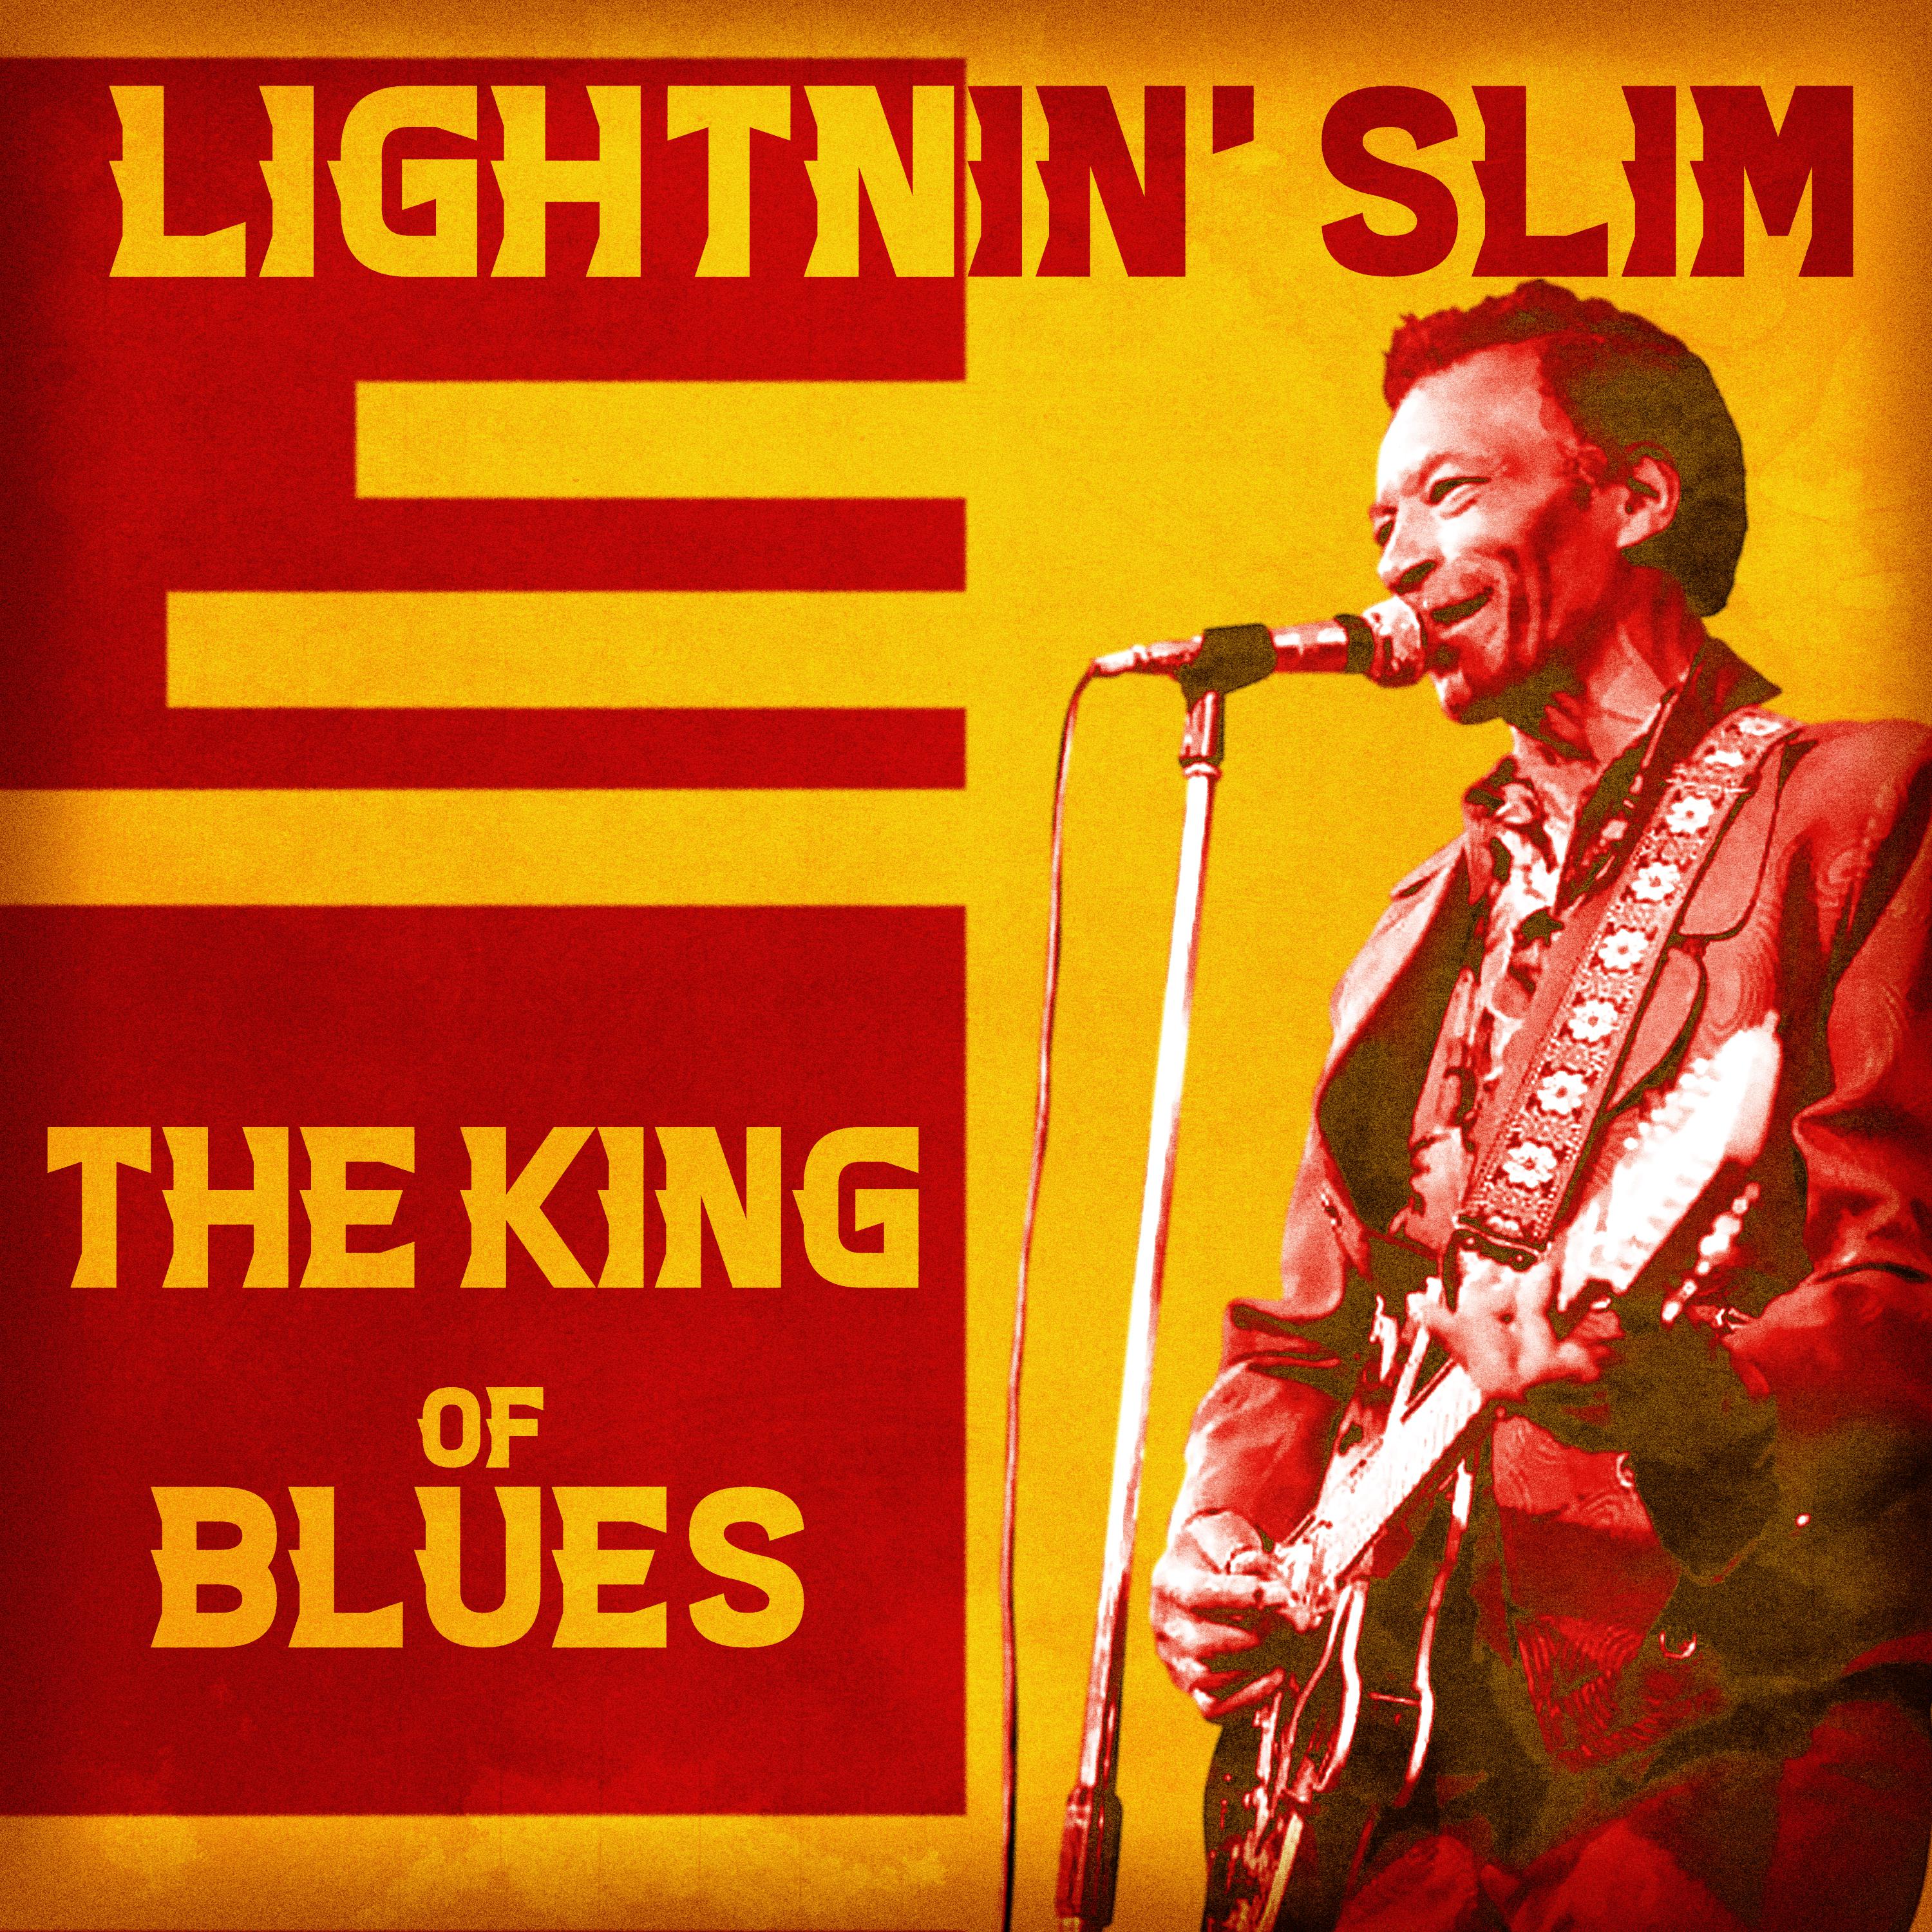 Lightnin' Slim - Bed Bug Blues (Remastered)